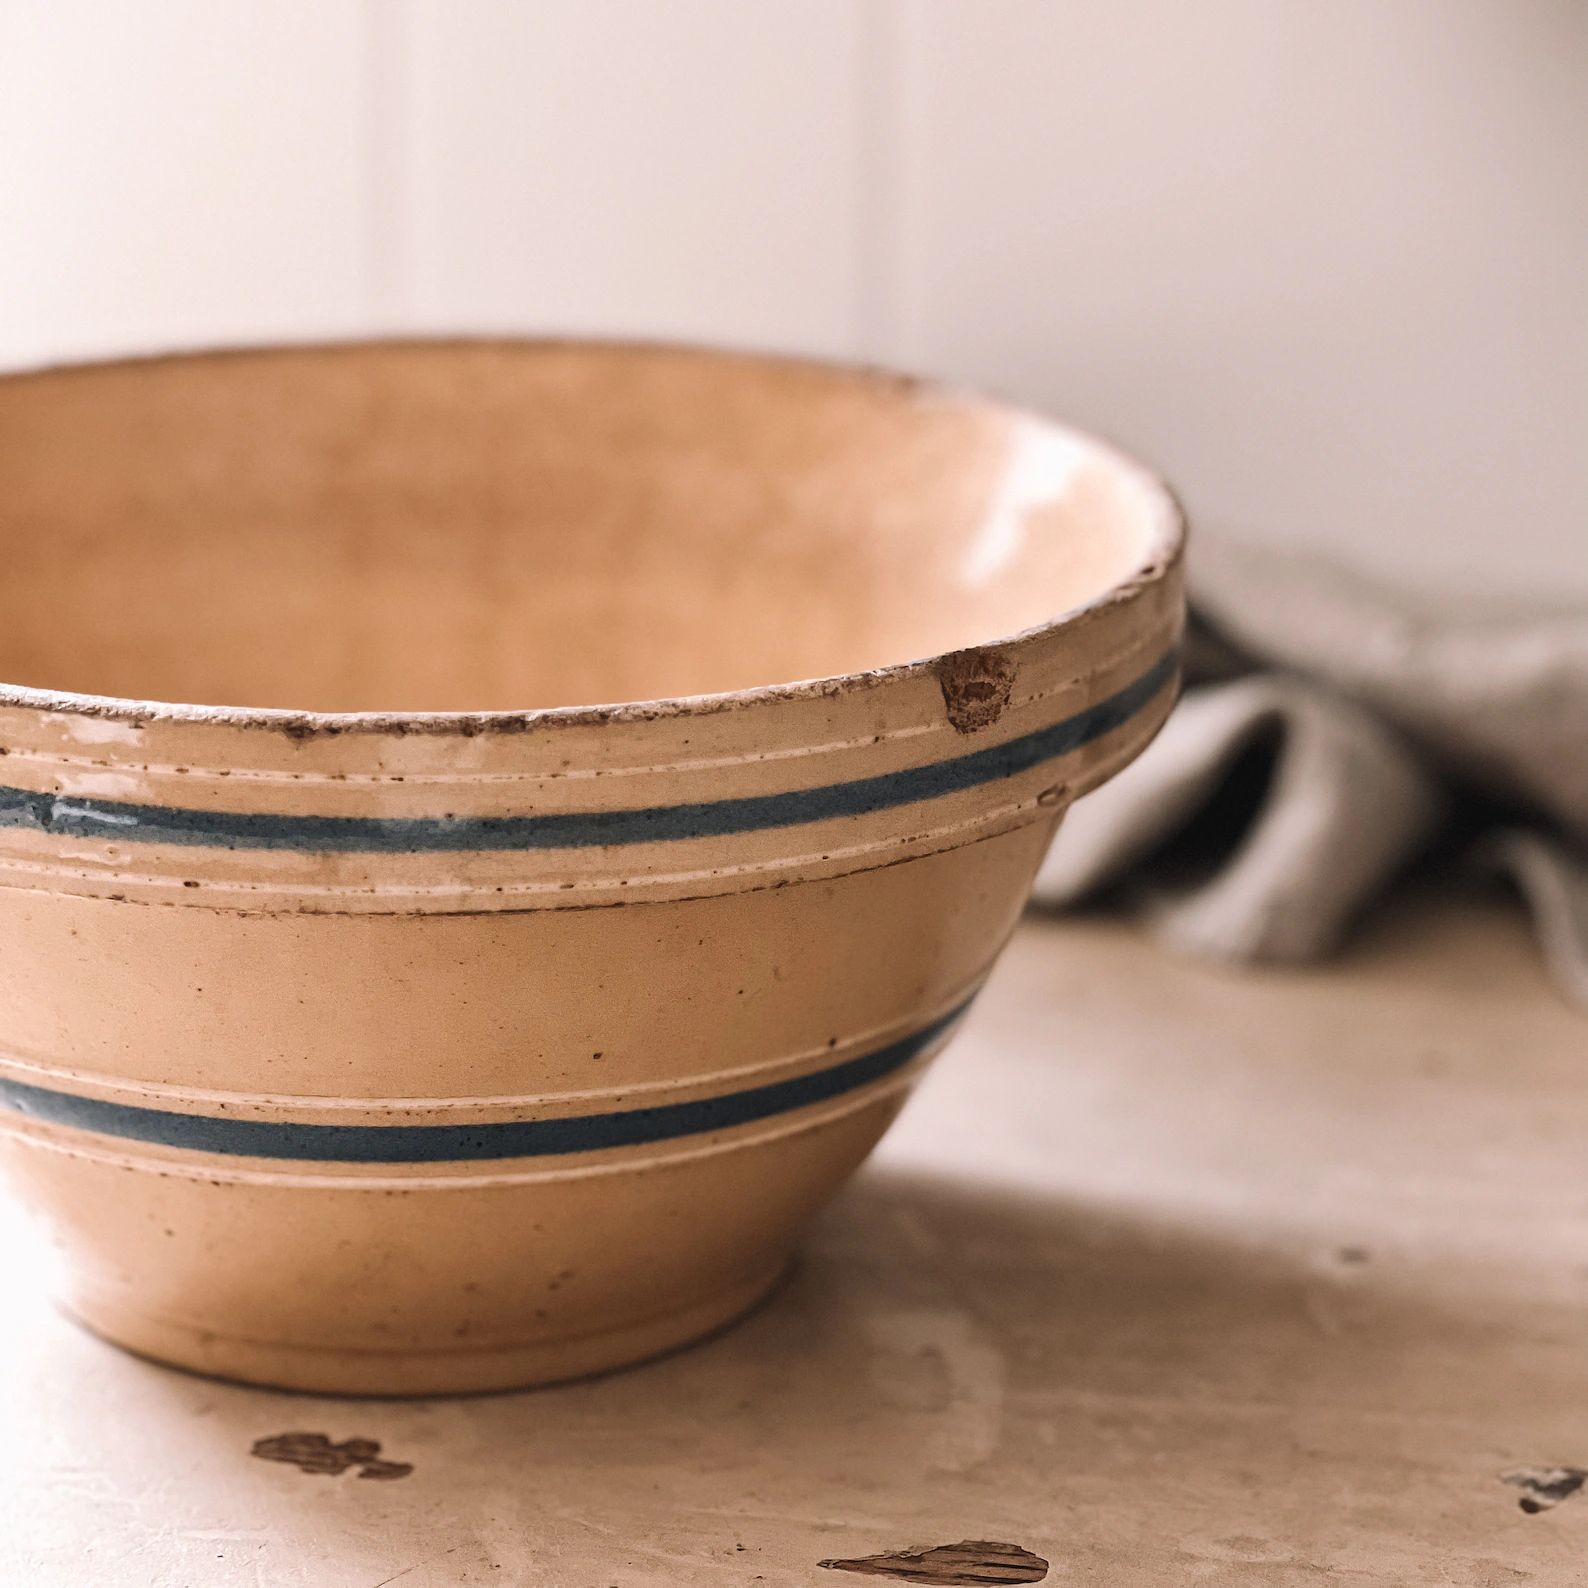 Yellowware Stoneware Mixing Bowl, Yellow, White Blue Striped Bowl, Farmhouse Style Nesting Bowl, ... | Etsy (US)